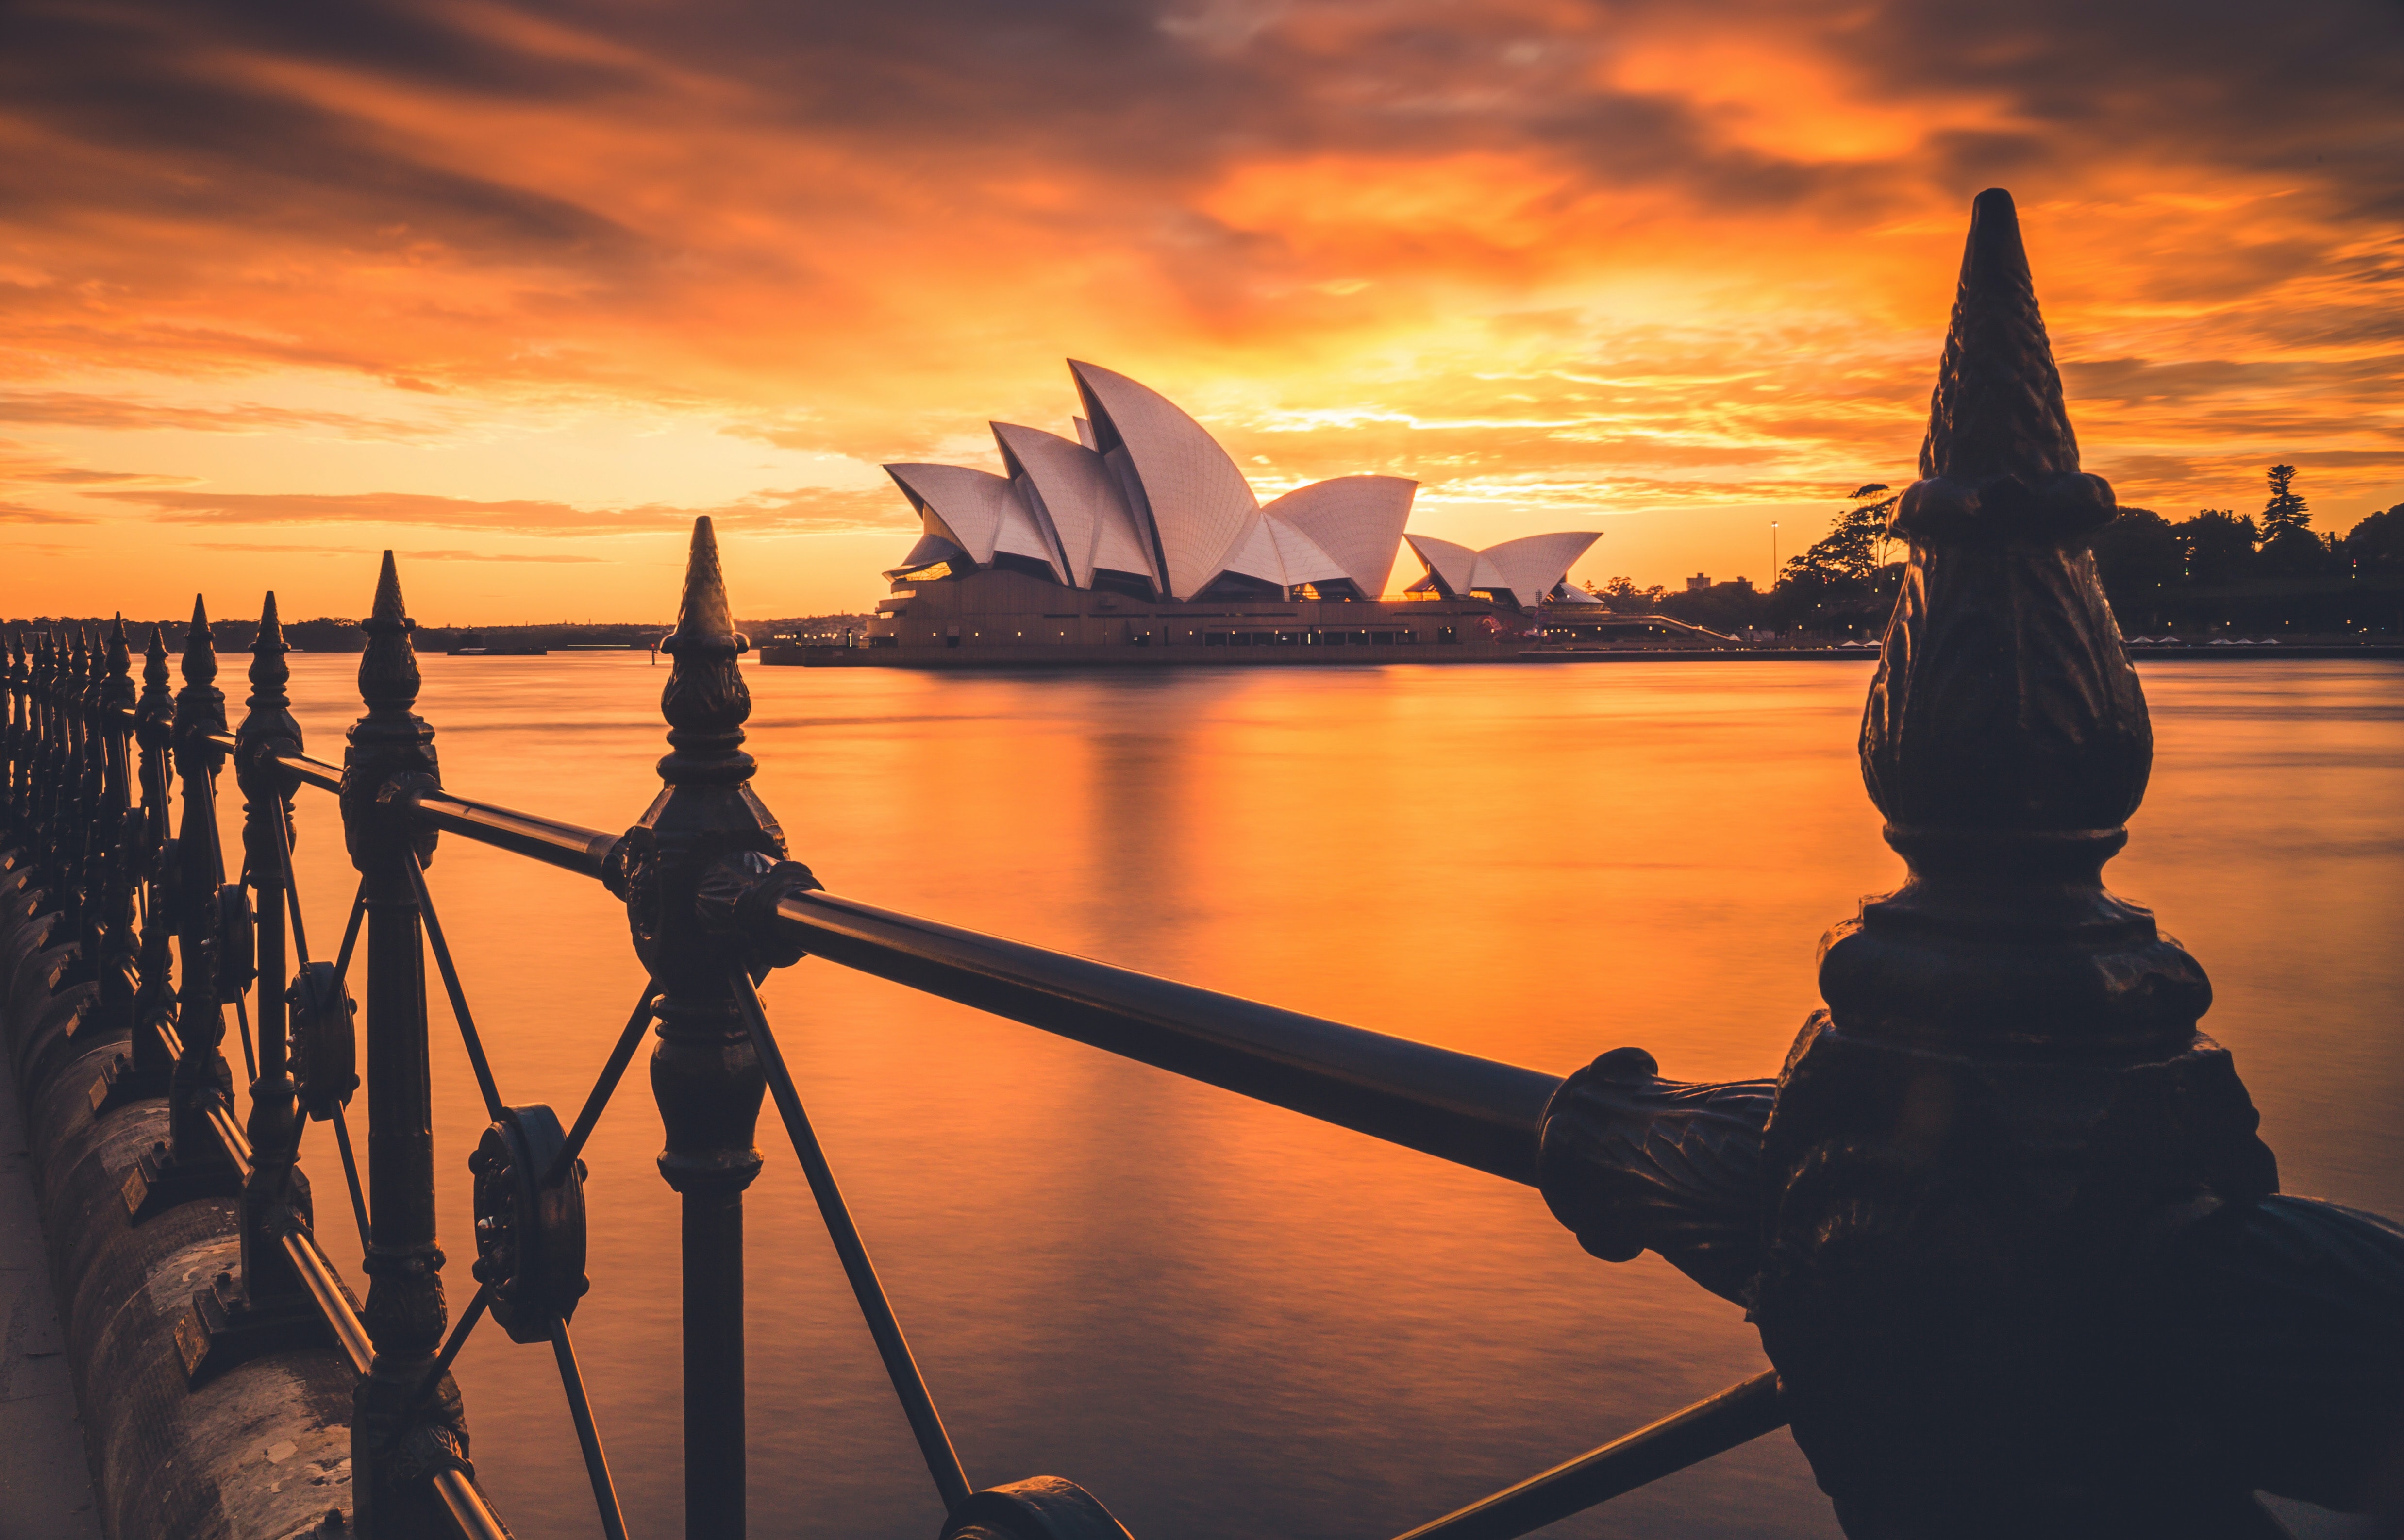 Sydney Opera House by sunset